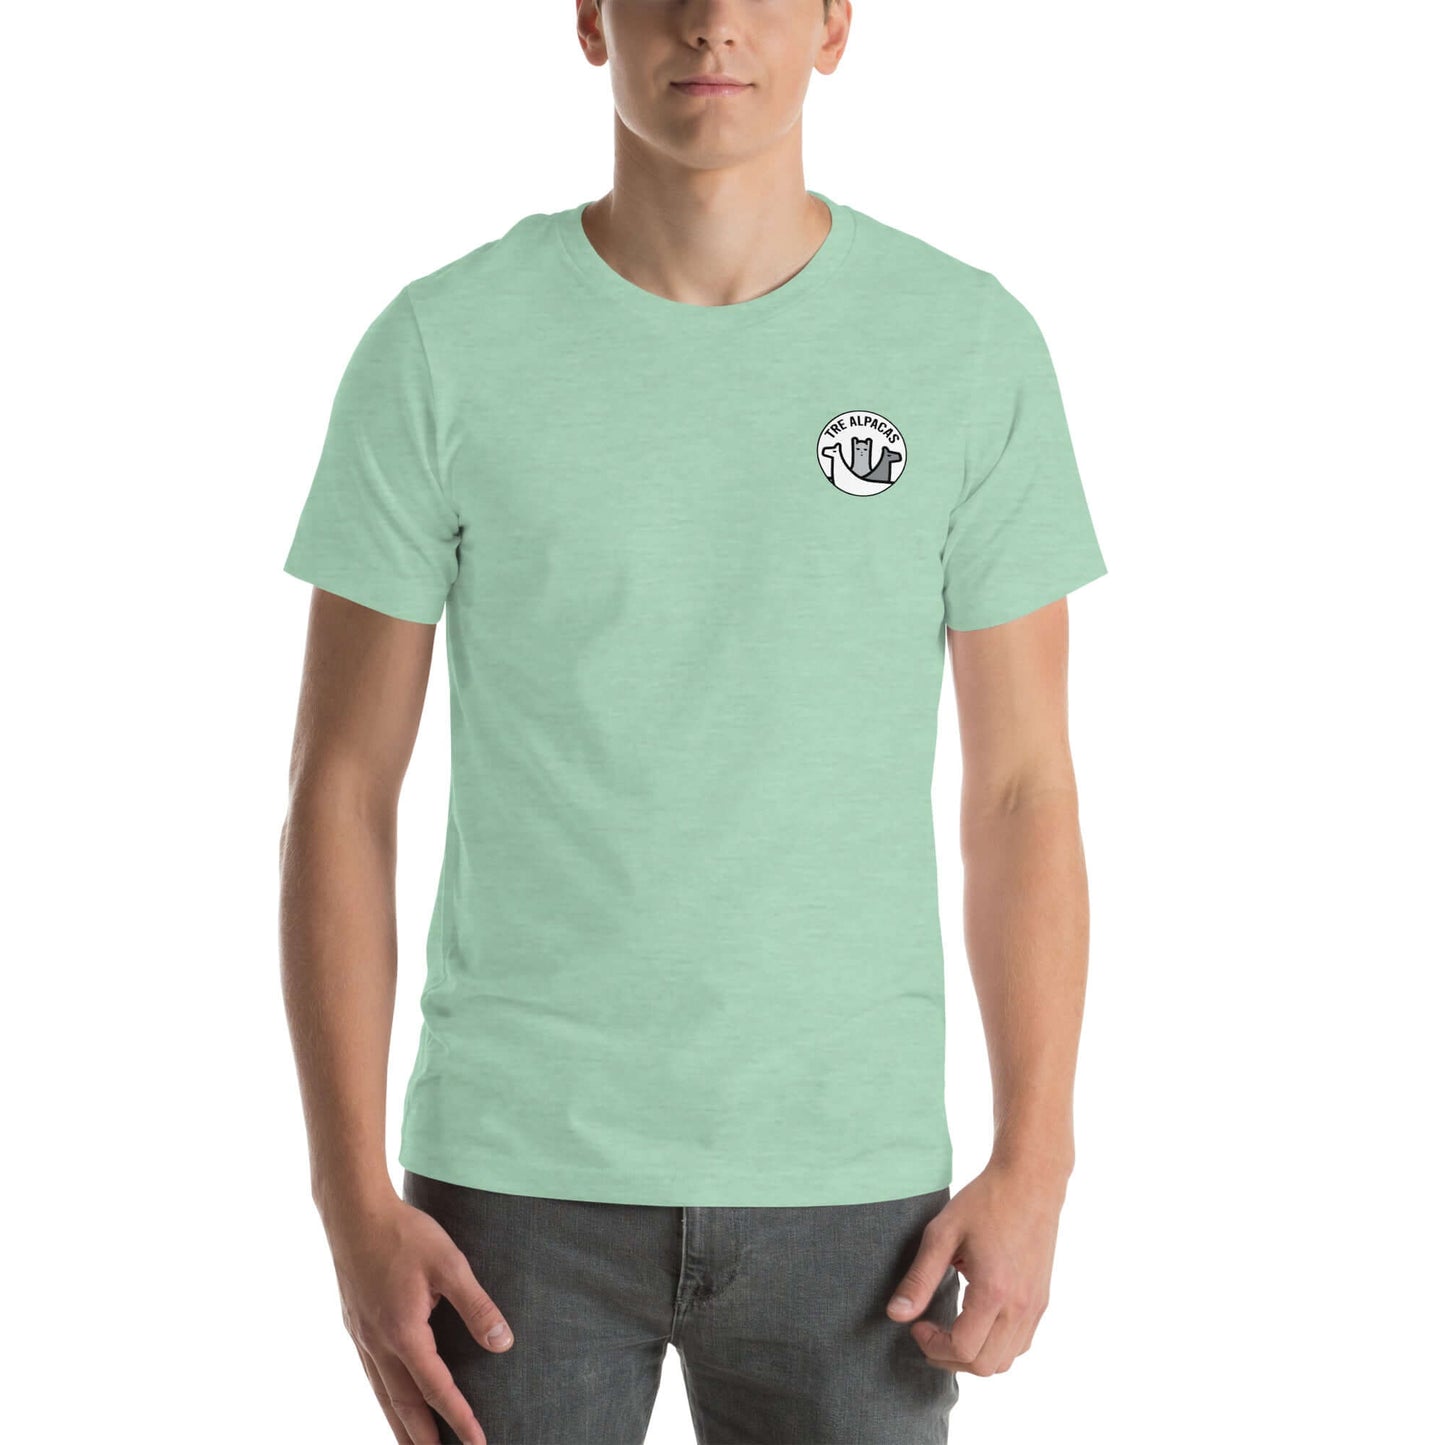 Alpaka T-Shirt als ideales Alpaka Geschenk für Alpaka-Enthusiasten